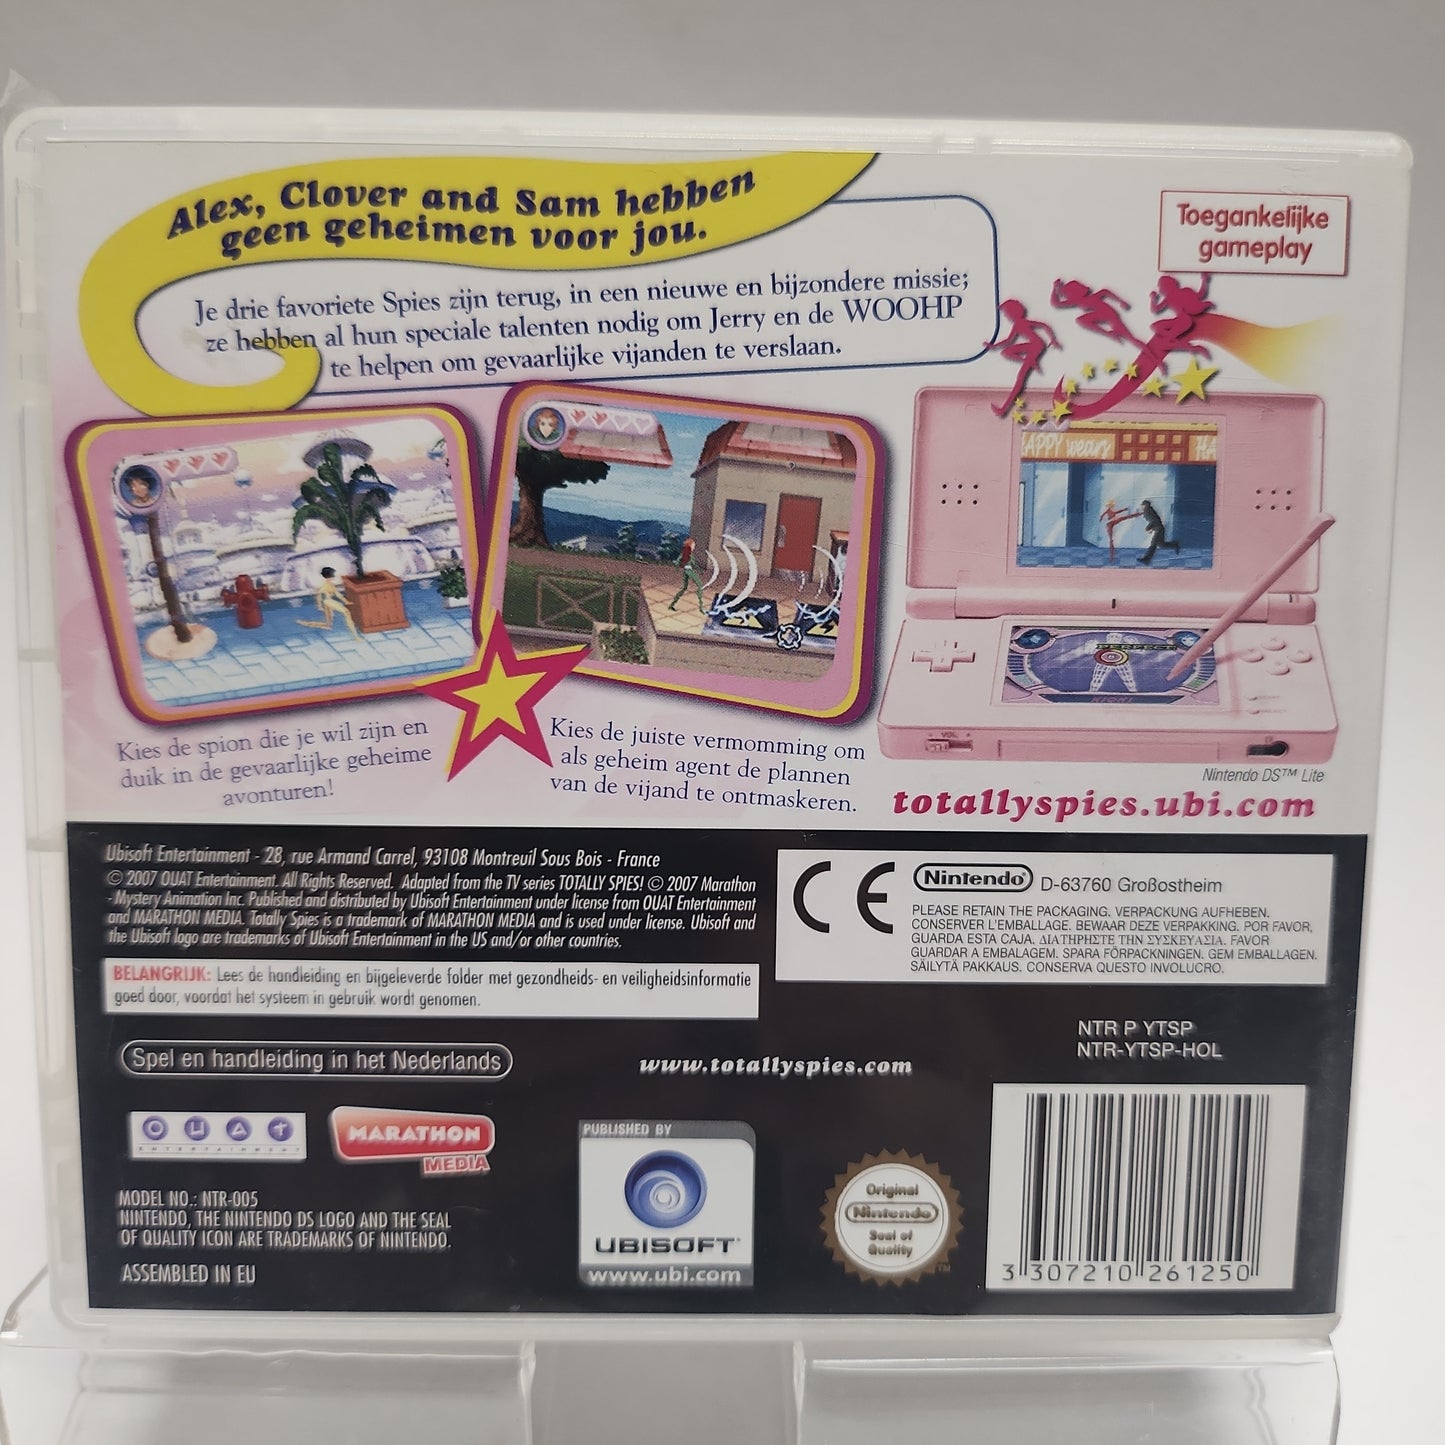 Totally Spies 3: Super Spionnen Nintendo DS